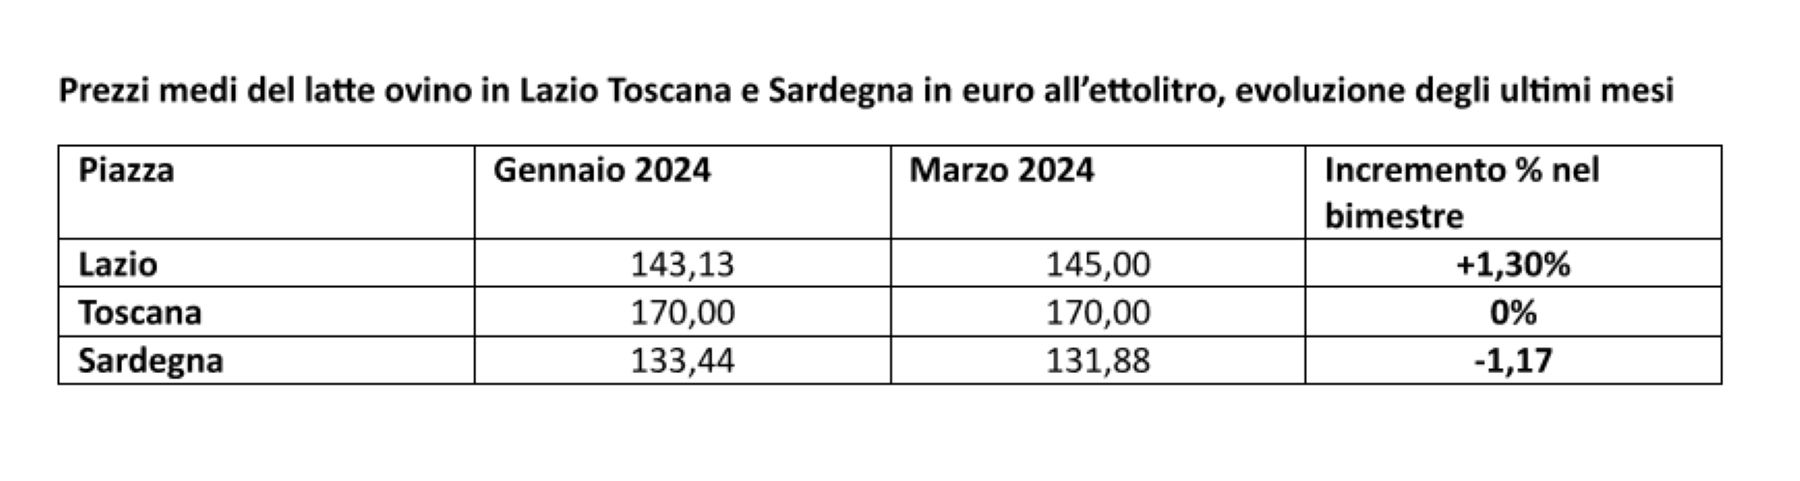 Prezzi medi del latte ovino in Lazio Toscana e Sardegna e loro evoluzione all'8 aprile 2024 - Elaborazioni AgroNotizie su dati Ismea